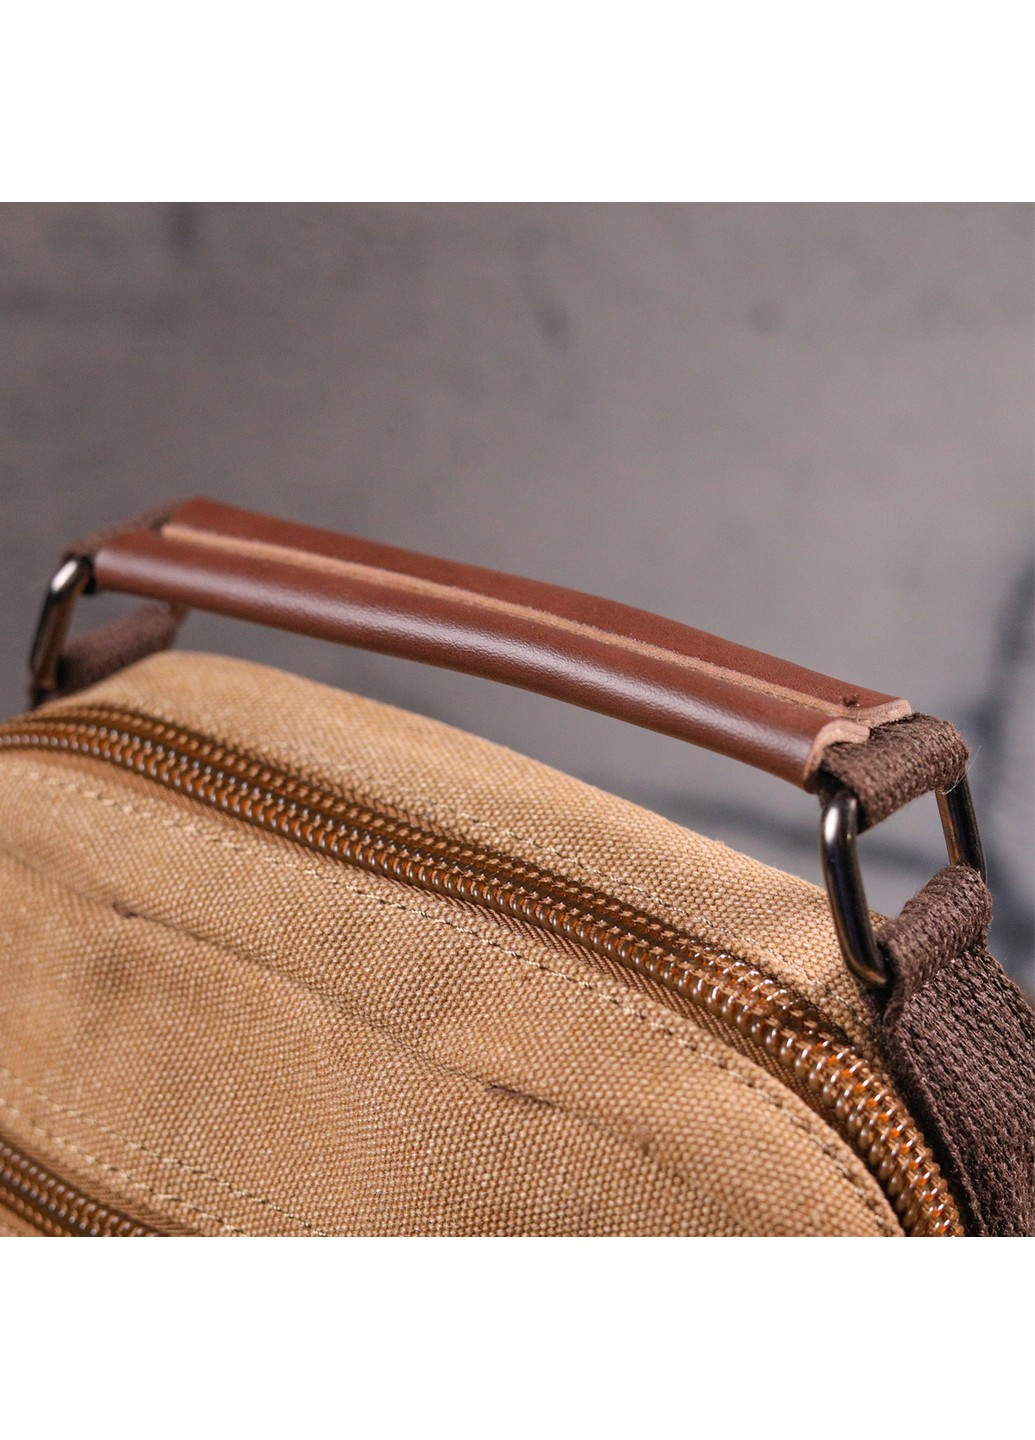 Небольшая мужская сумка из плотного текстиля 21226 Коричневая Vintage (258267823)